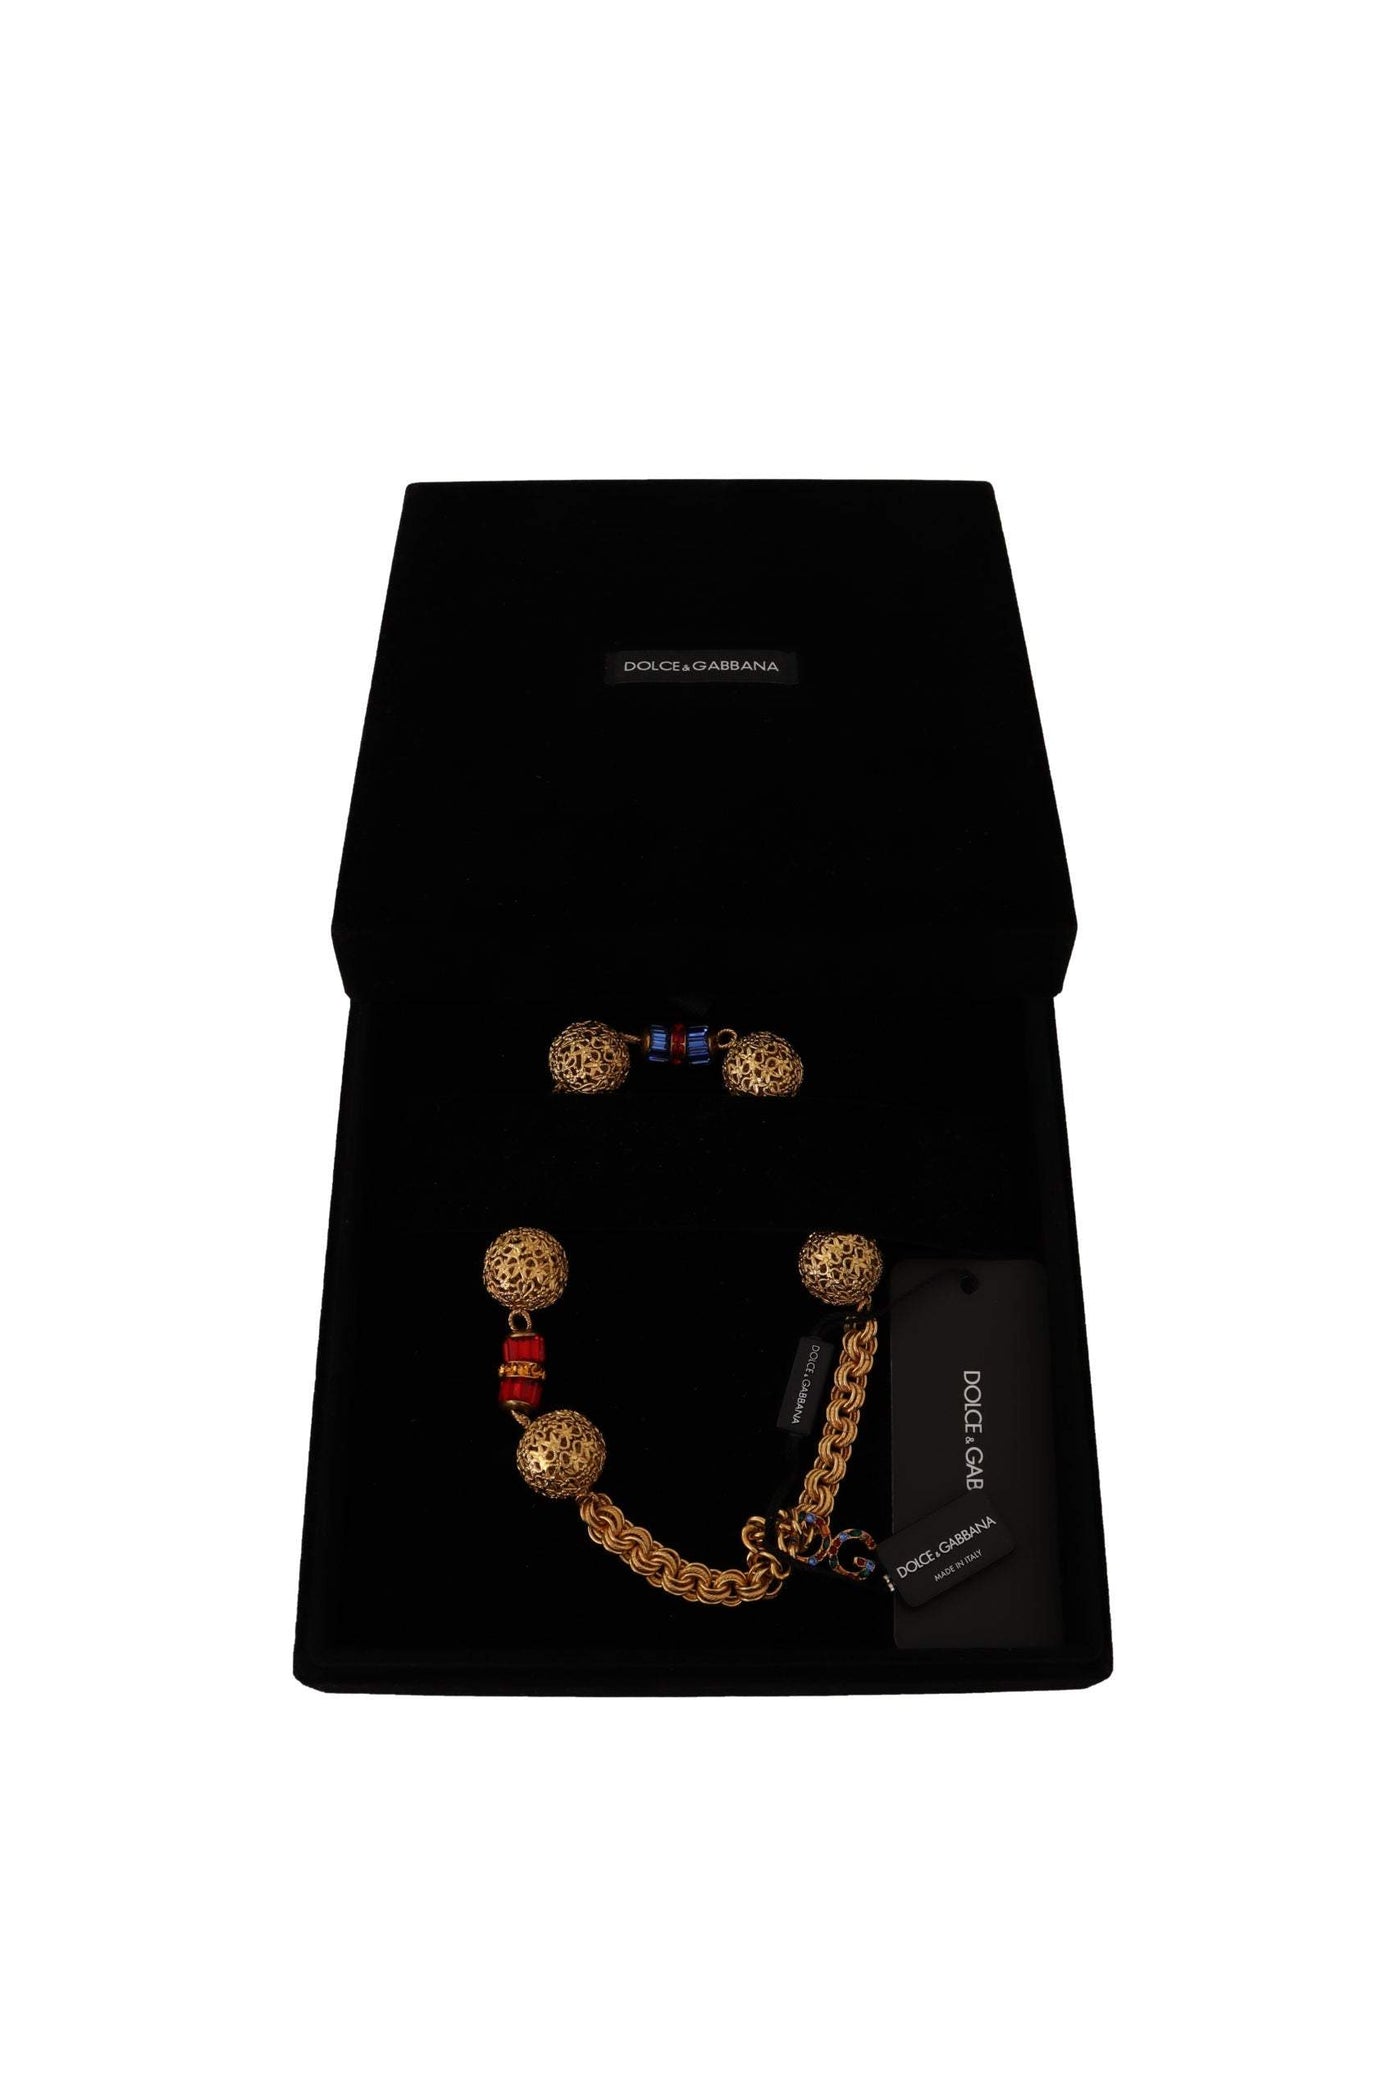 Dolce & Gabbana Gold Brass SFERE Crystal Pendant Statet Necklace Dolce & Gabbana, feed-1, Gold, Necklaces - Women - Jewelry at SEYMAYKA